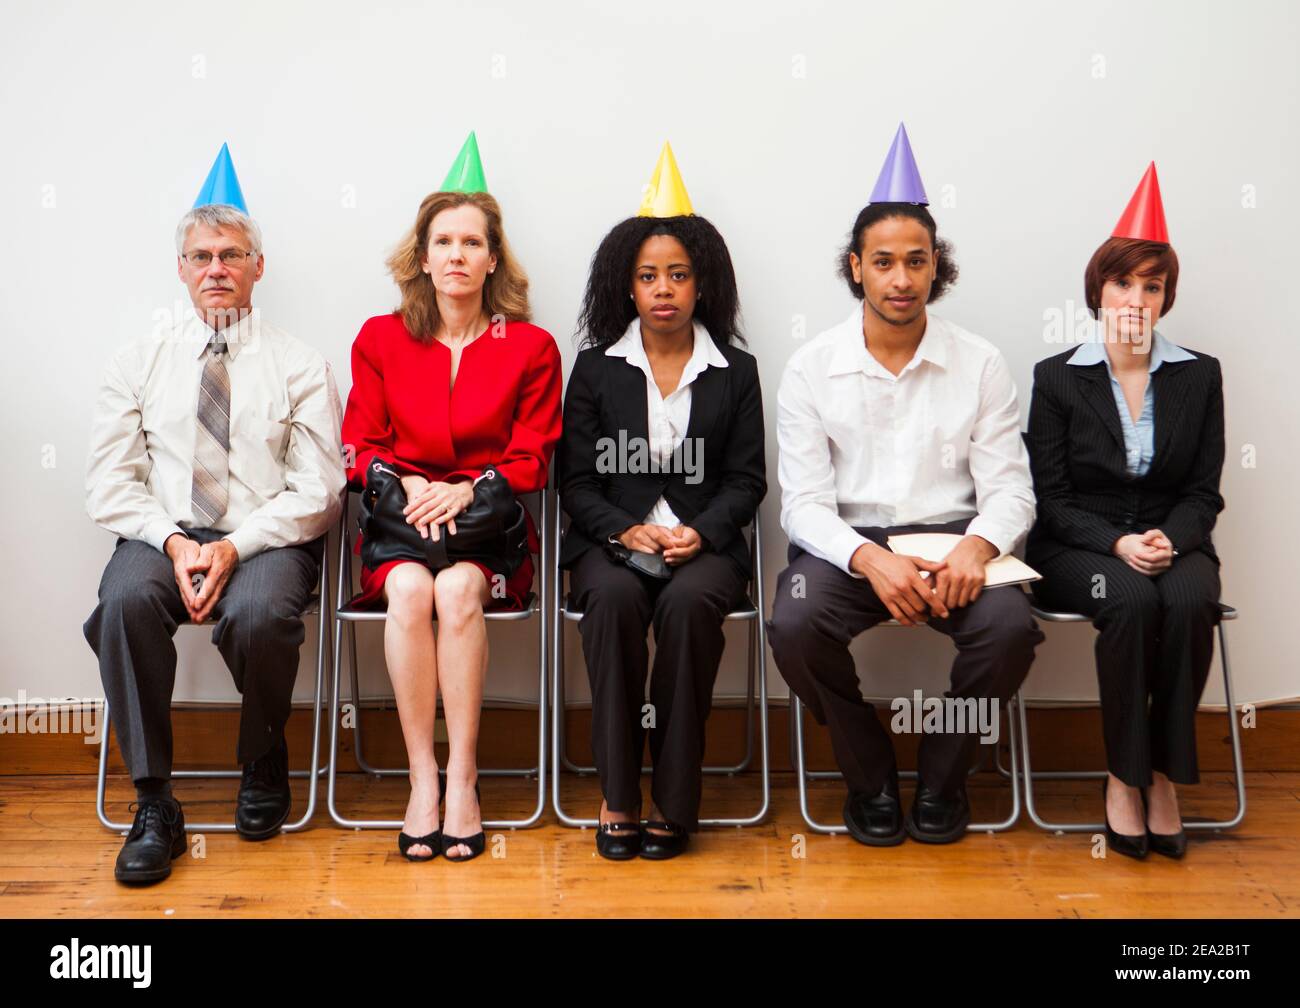 Eine Gruppe von Büroangestellten, die gelangweilt oder desinteressiert aussehen, während sie Partyhüte tragen. Humorvolles Geschäftskonzept. Stockfoto